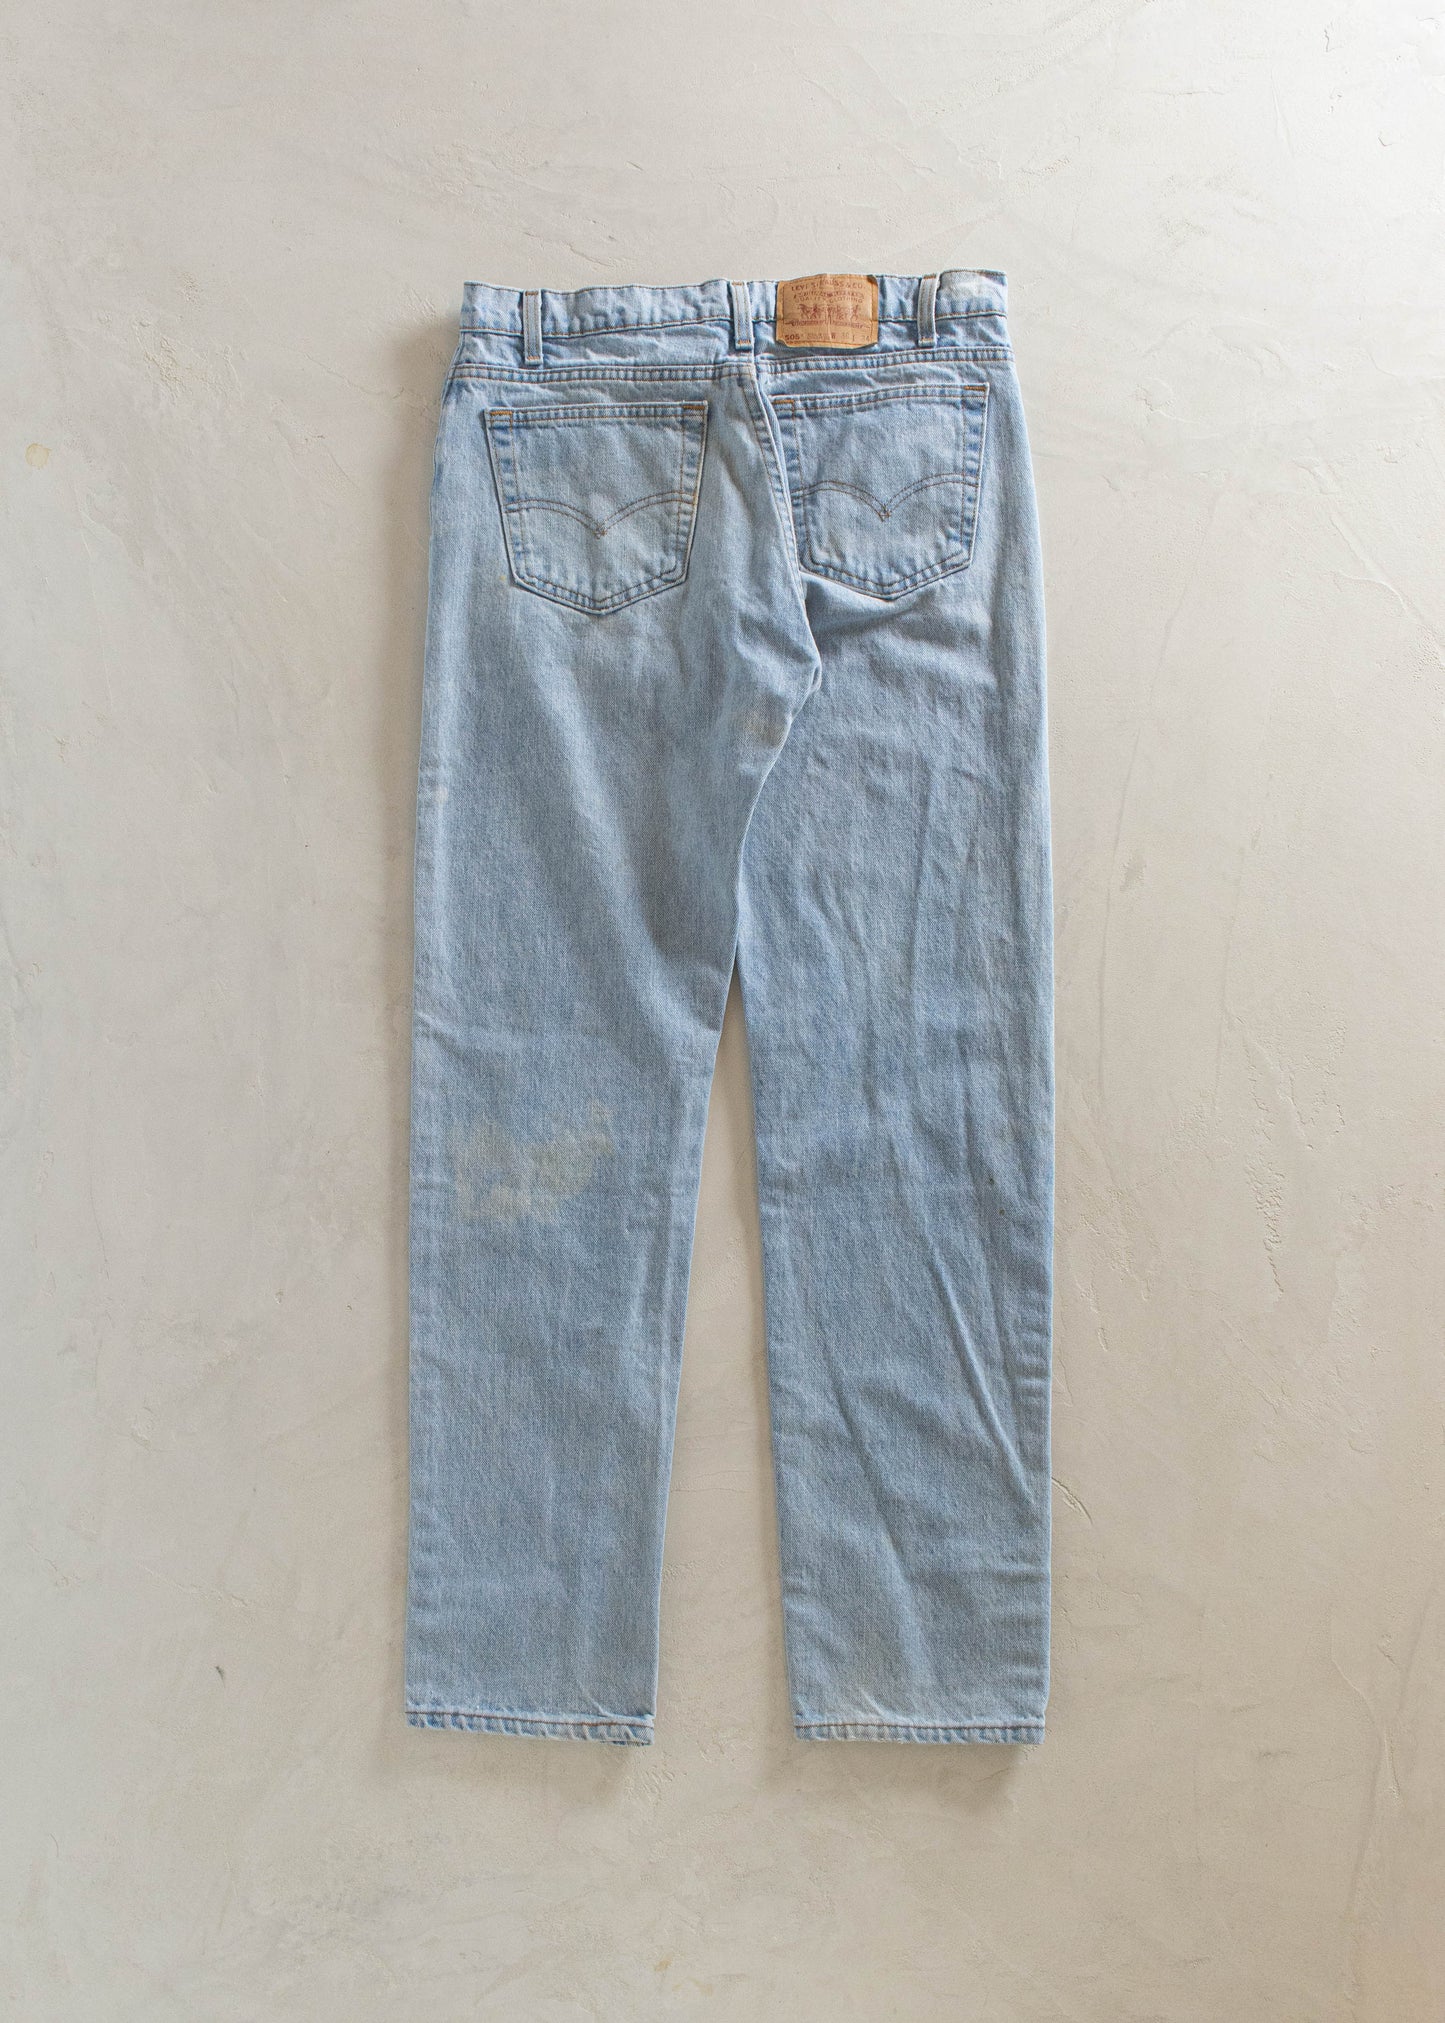 1980s Levi's 505 Lightwash Jeans Size Women's 30 Men's 32